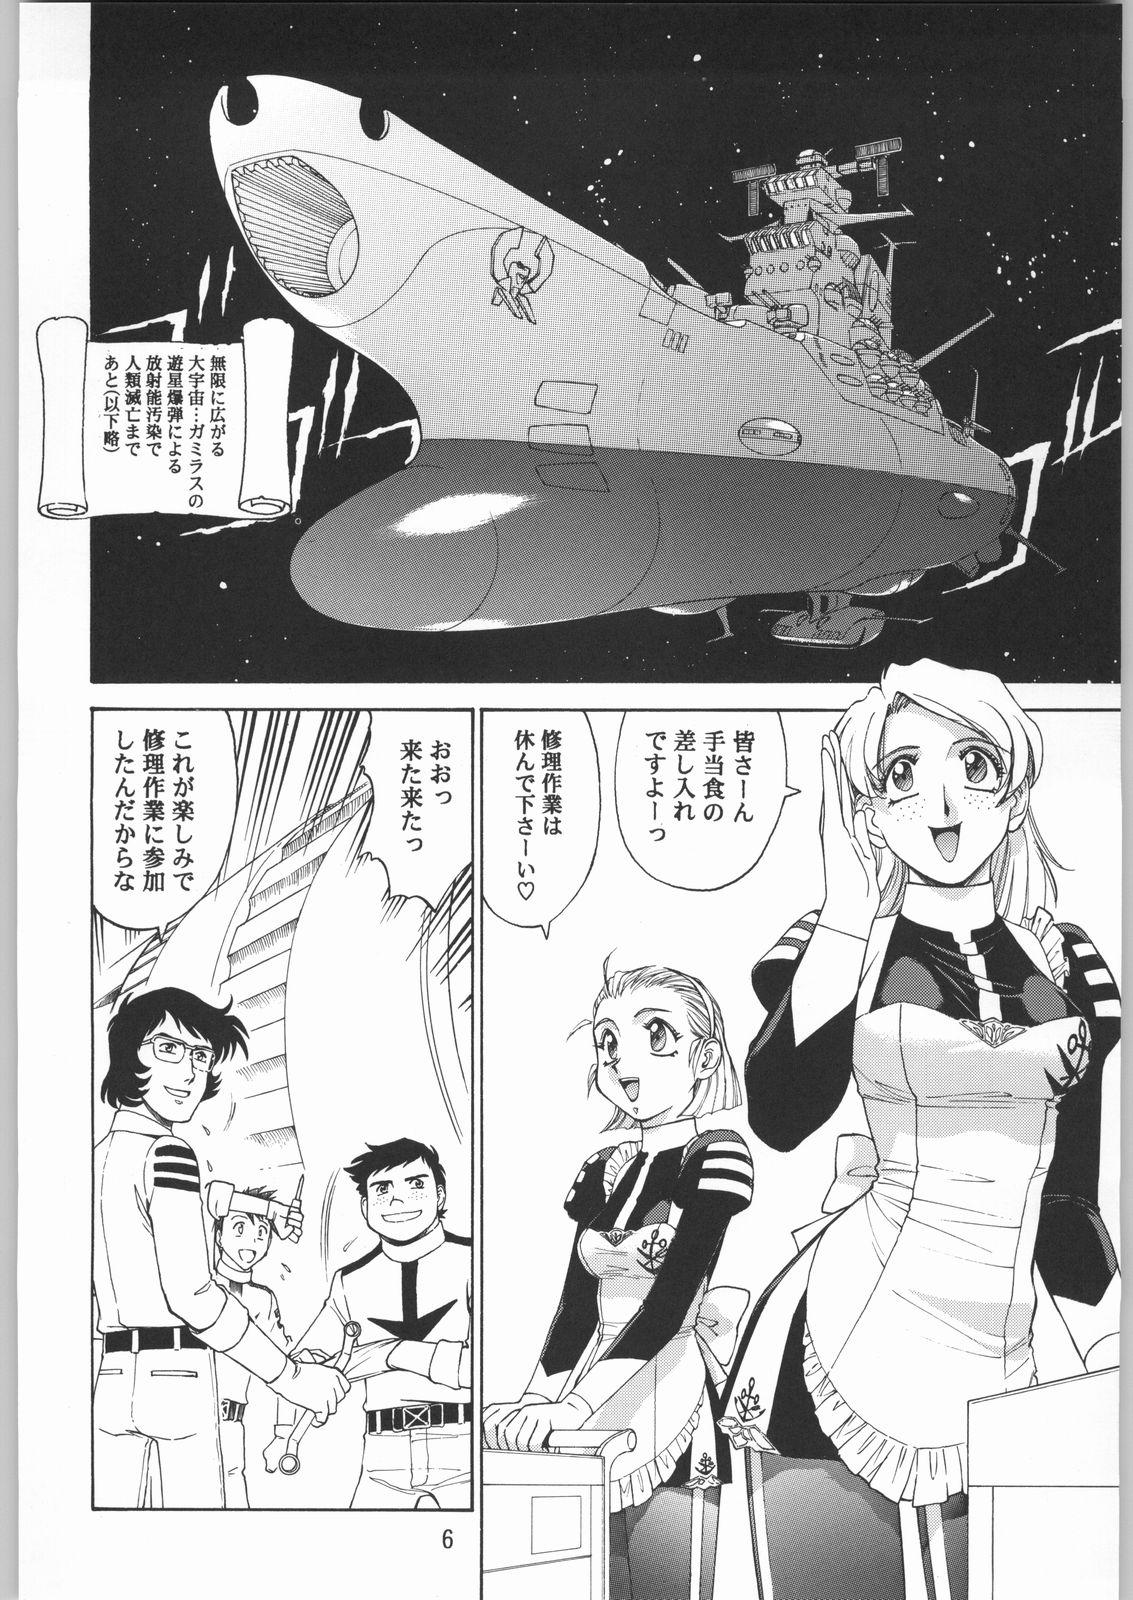 Punished Megaton Punch 1 - Space battleship yamato Chobits Bulge - Page 5